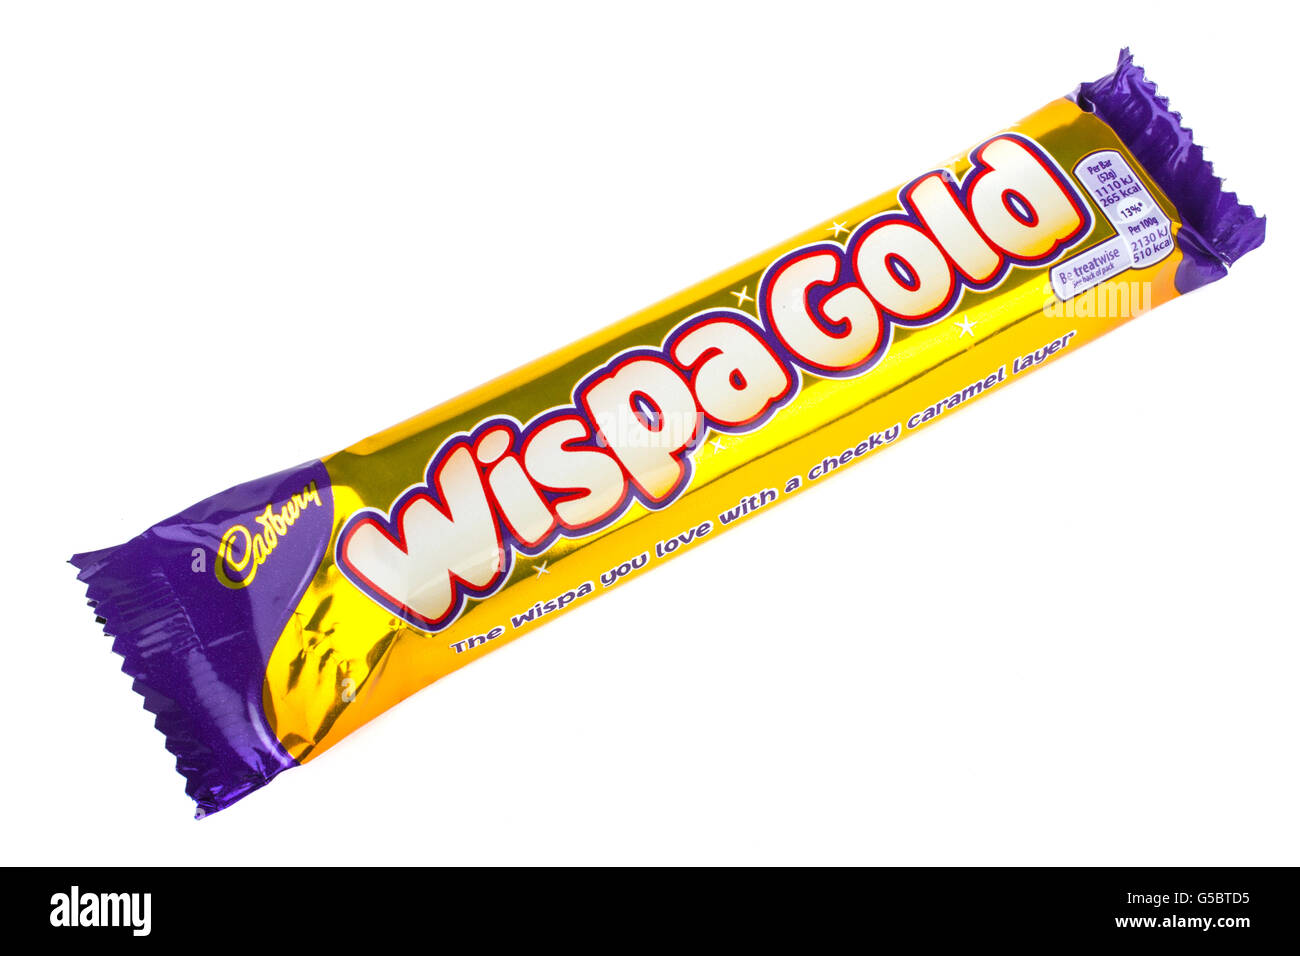 Londres, UK - 6 mai 2016 : une emprise Wispa Gold barre de chocolat fabriqués par Cadbury, photographié sur un arrière-plan uni, blanc Banque D'Images